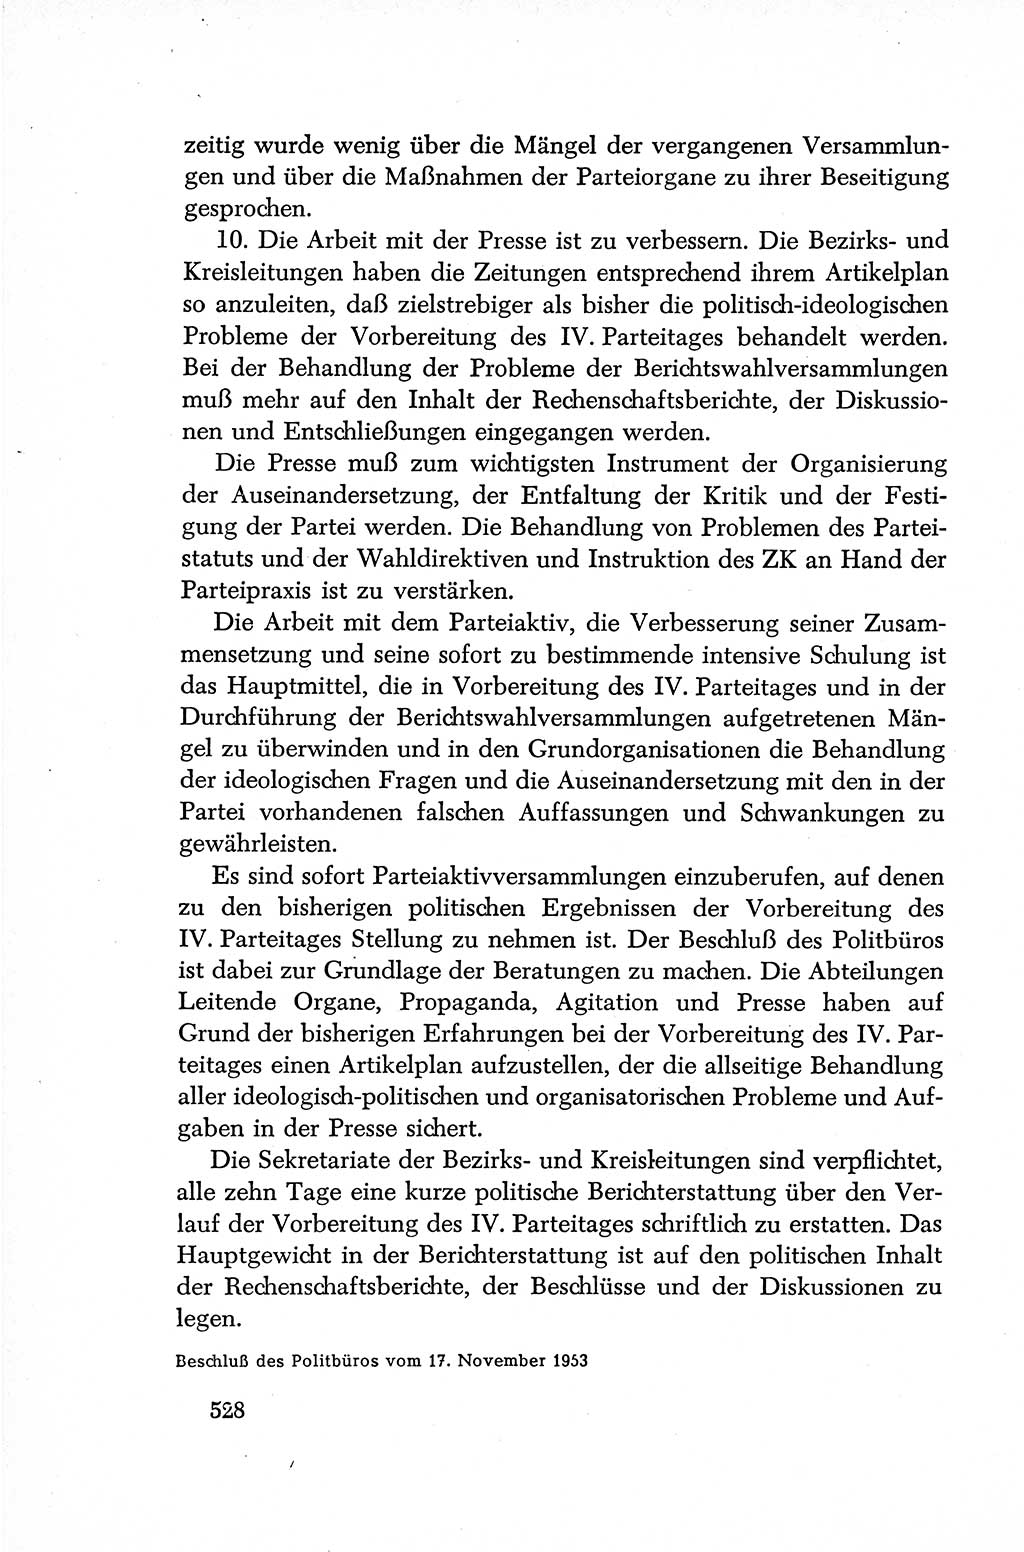 Dokumente der Sozialistischen Einheitspartei Deutschlands (SED) [Deutsche Demokratische Republik (DDR)] 1952-1953, Seite 528 (Dok. SED DDR 1952-1953, S. 528)